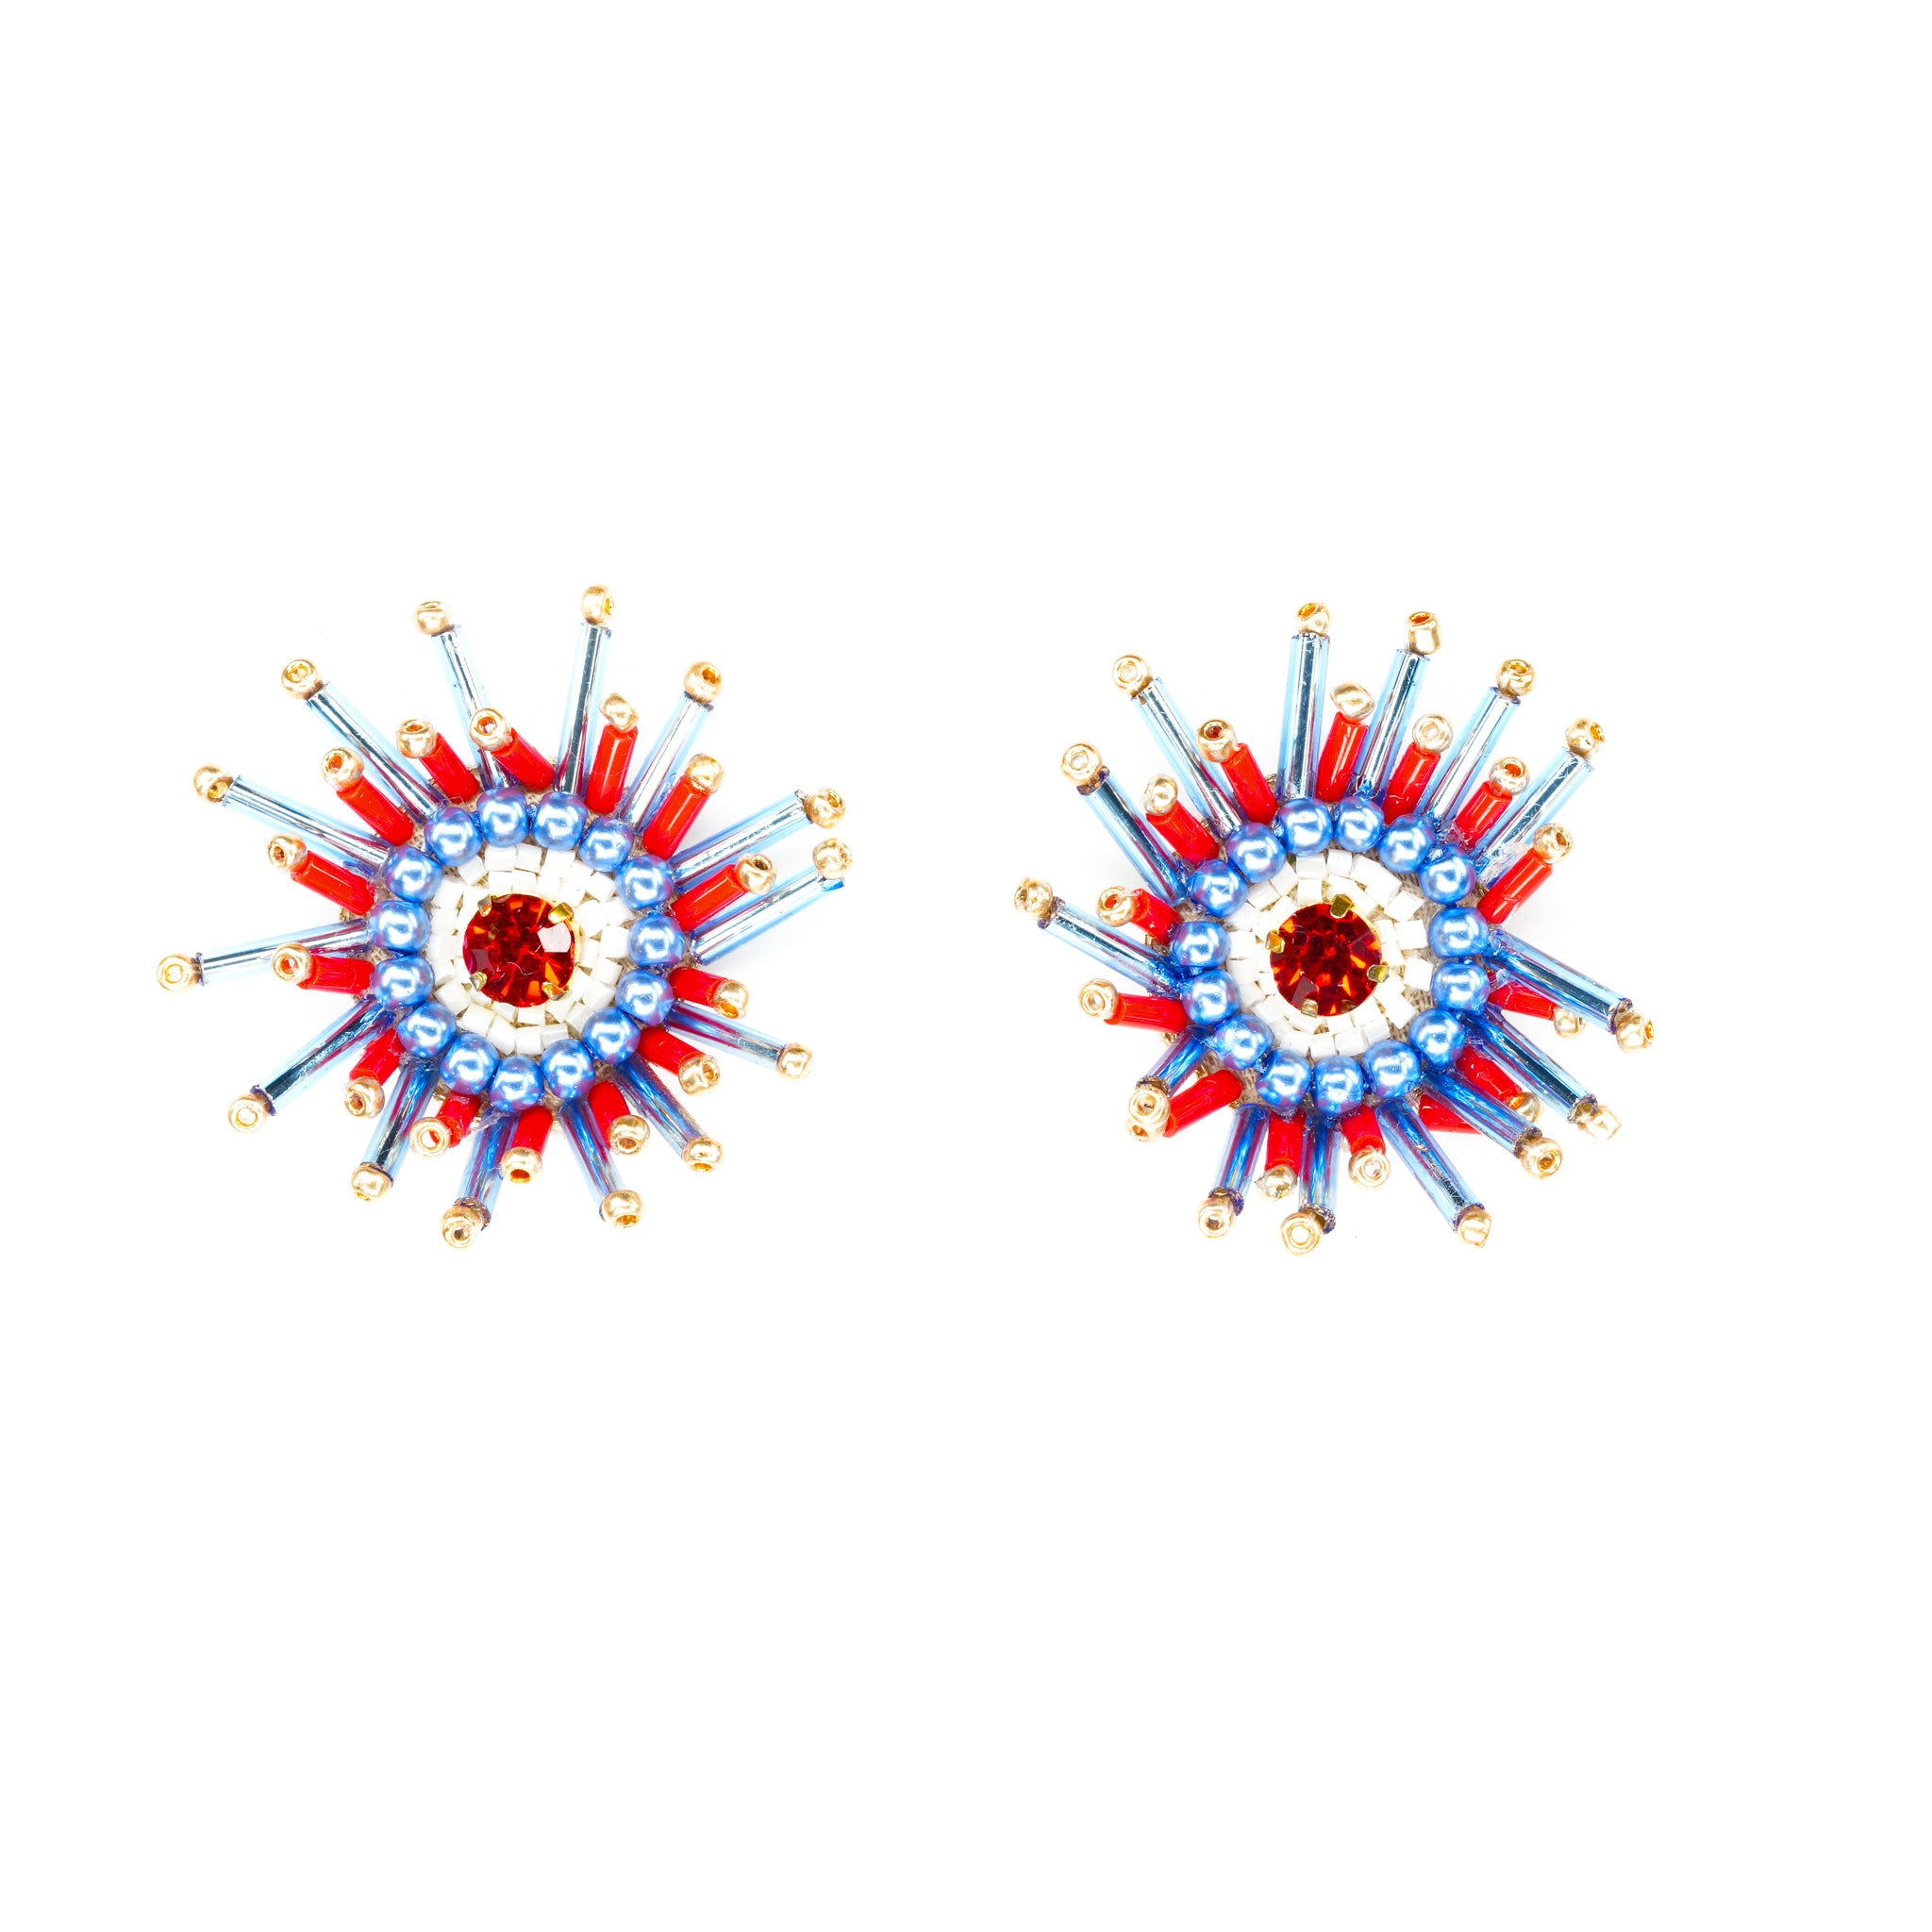 Sunburst Earrings in Red, White and Blue